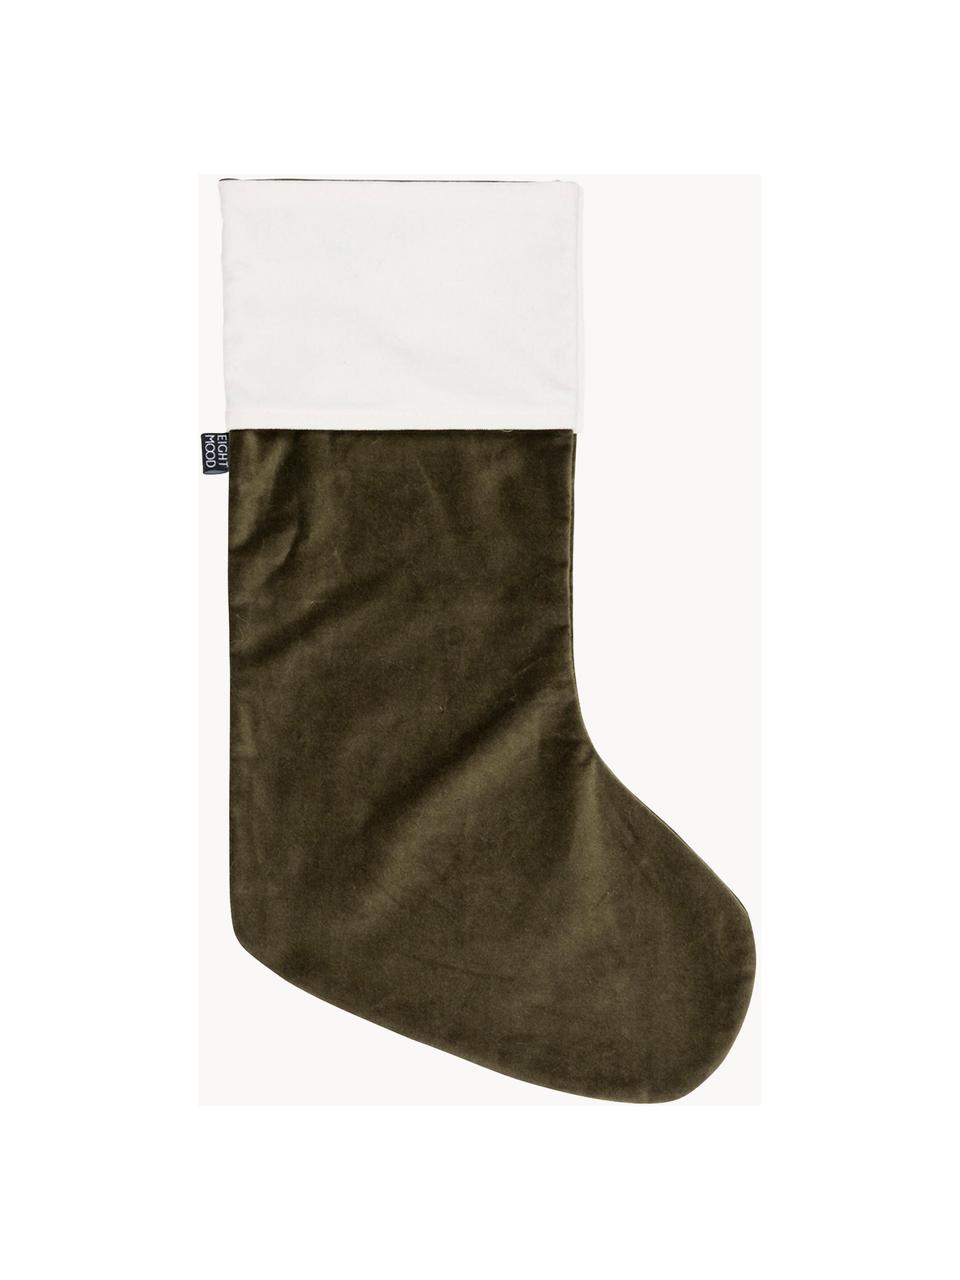 Vánoční ponožka Veronica, V 45 cm, Bavlna, Zelená, bílá, Š 25 cm, V 45 cm